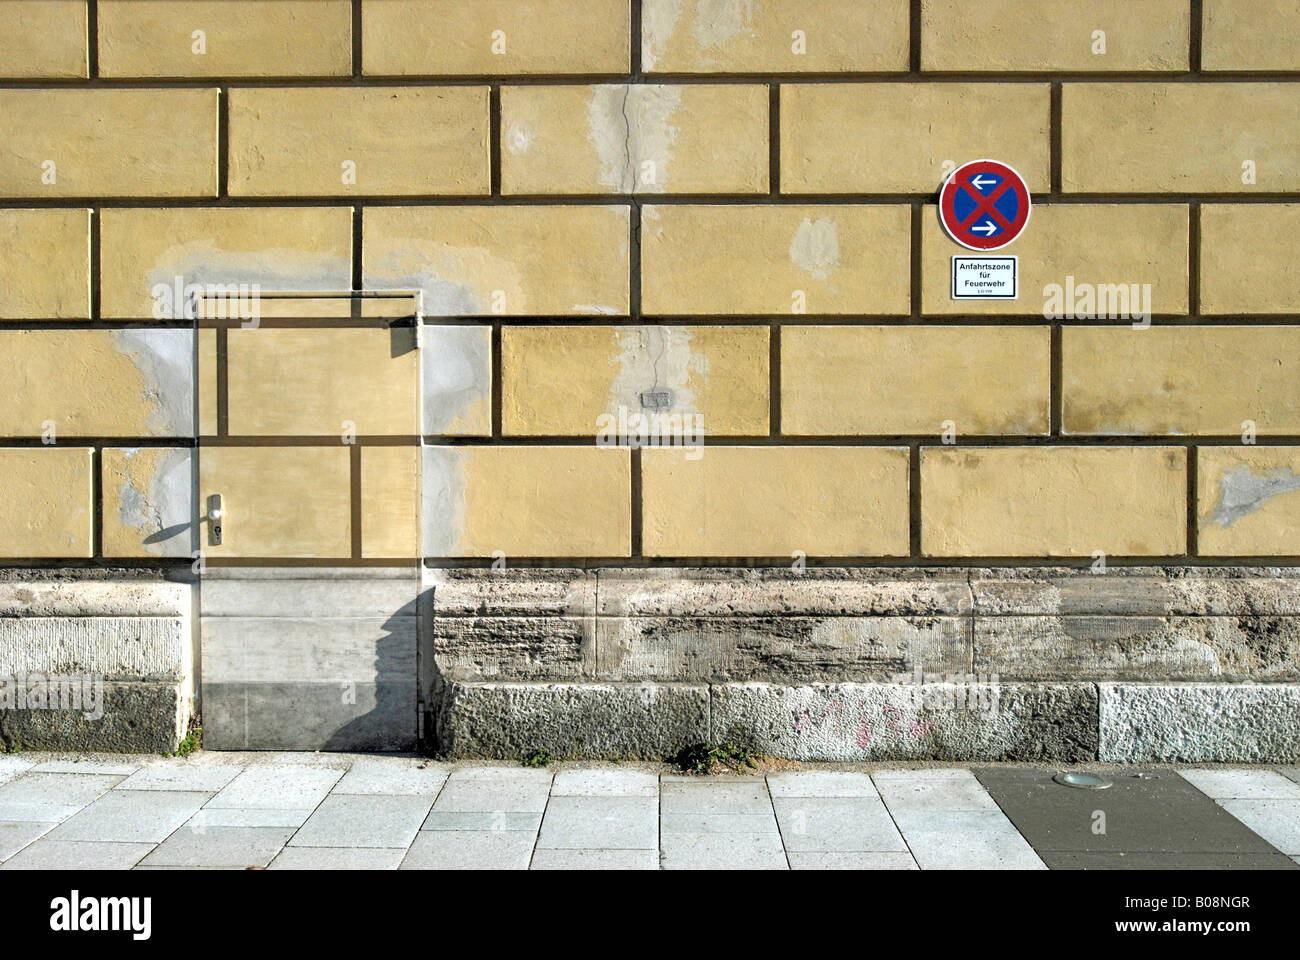 Fassade mit einer Tür, Tür hat das gleiche Muster wie die Wand drumherum, München, Bayern, Deutschland Stockfoto